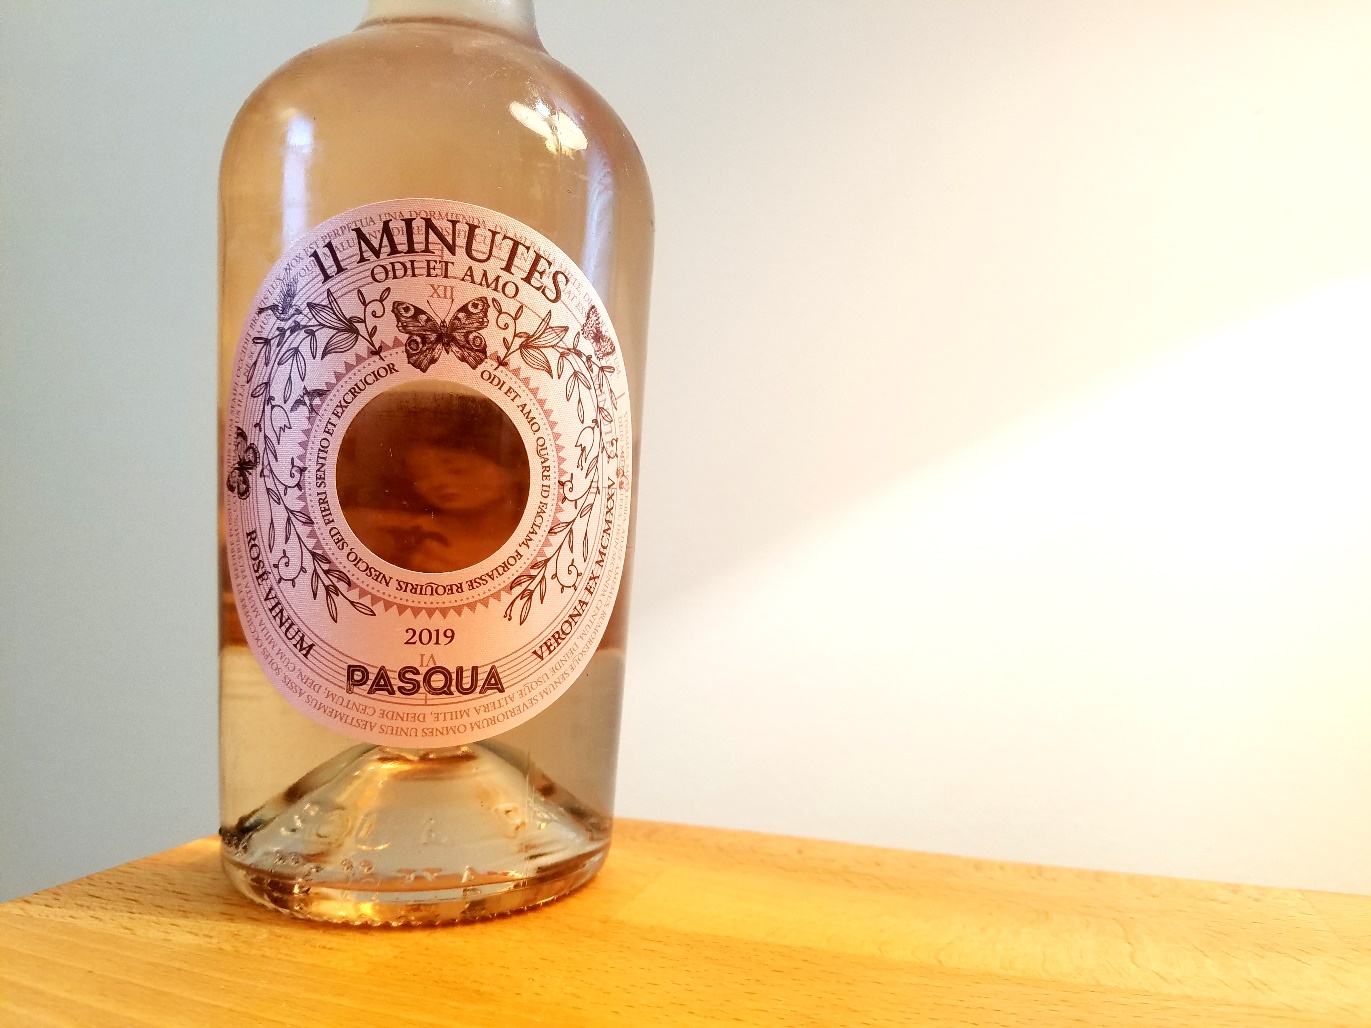 Famiglia Pasqua, 11 Minutes Odi et Amo Rosé Trevenezie 2019, Italy, Wine Casual